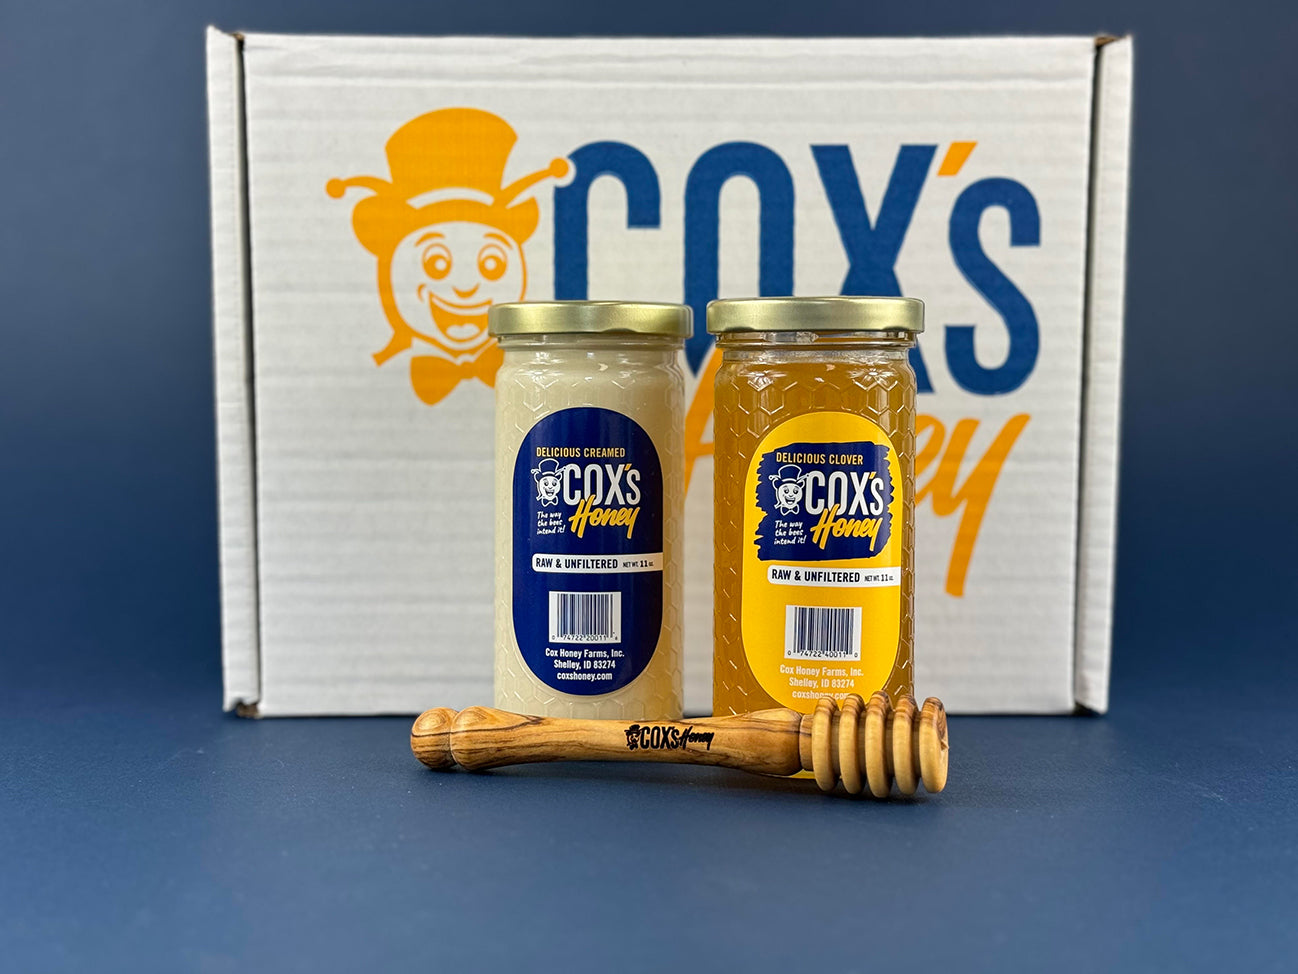 Cox's Honey Gift Set with 1 - 11 oz clover honey glass jar and 1 - 11 oz creamed honey glass jar and 1 olive wood honey dipper on outside of box